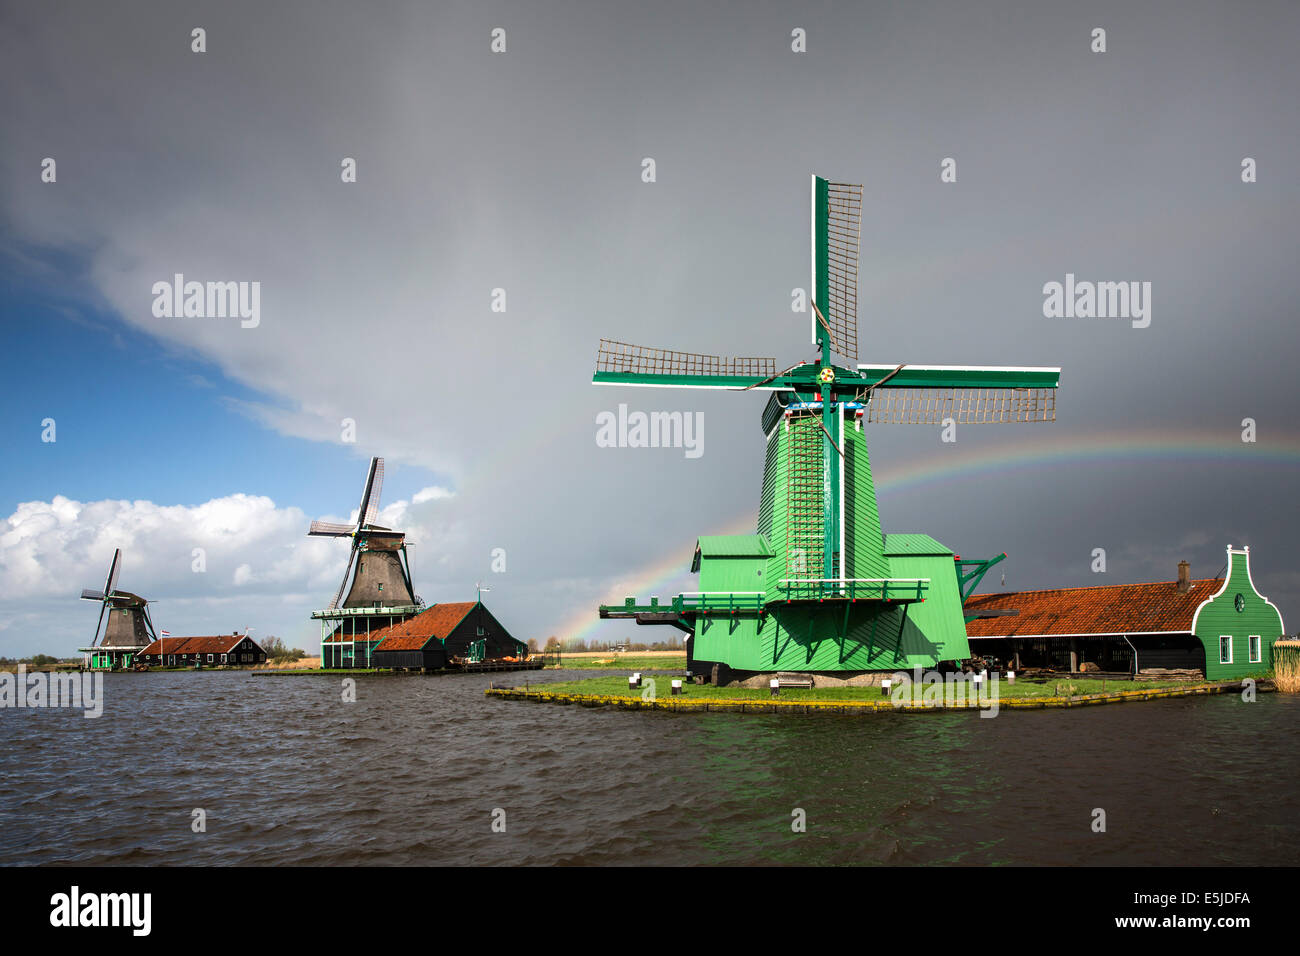 Niederlande, Zaanse Schans in der Nähe von Zaandam, touristische Attraktion mit Windmühlen und Häuser aus dem 17. und 18. Jahrhundert. Regenbogen Stockfoto